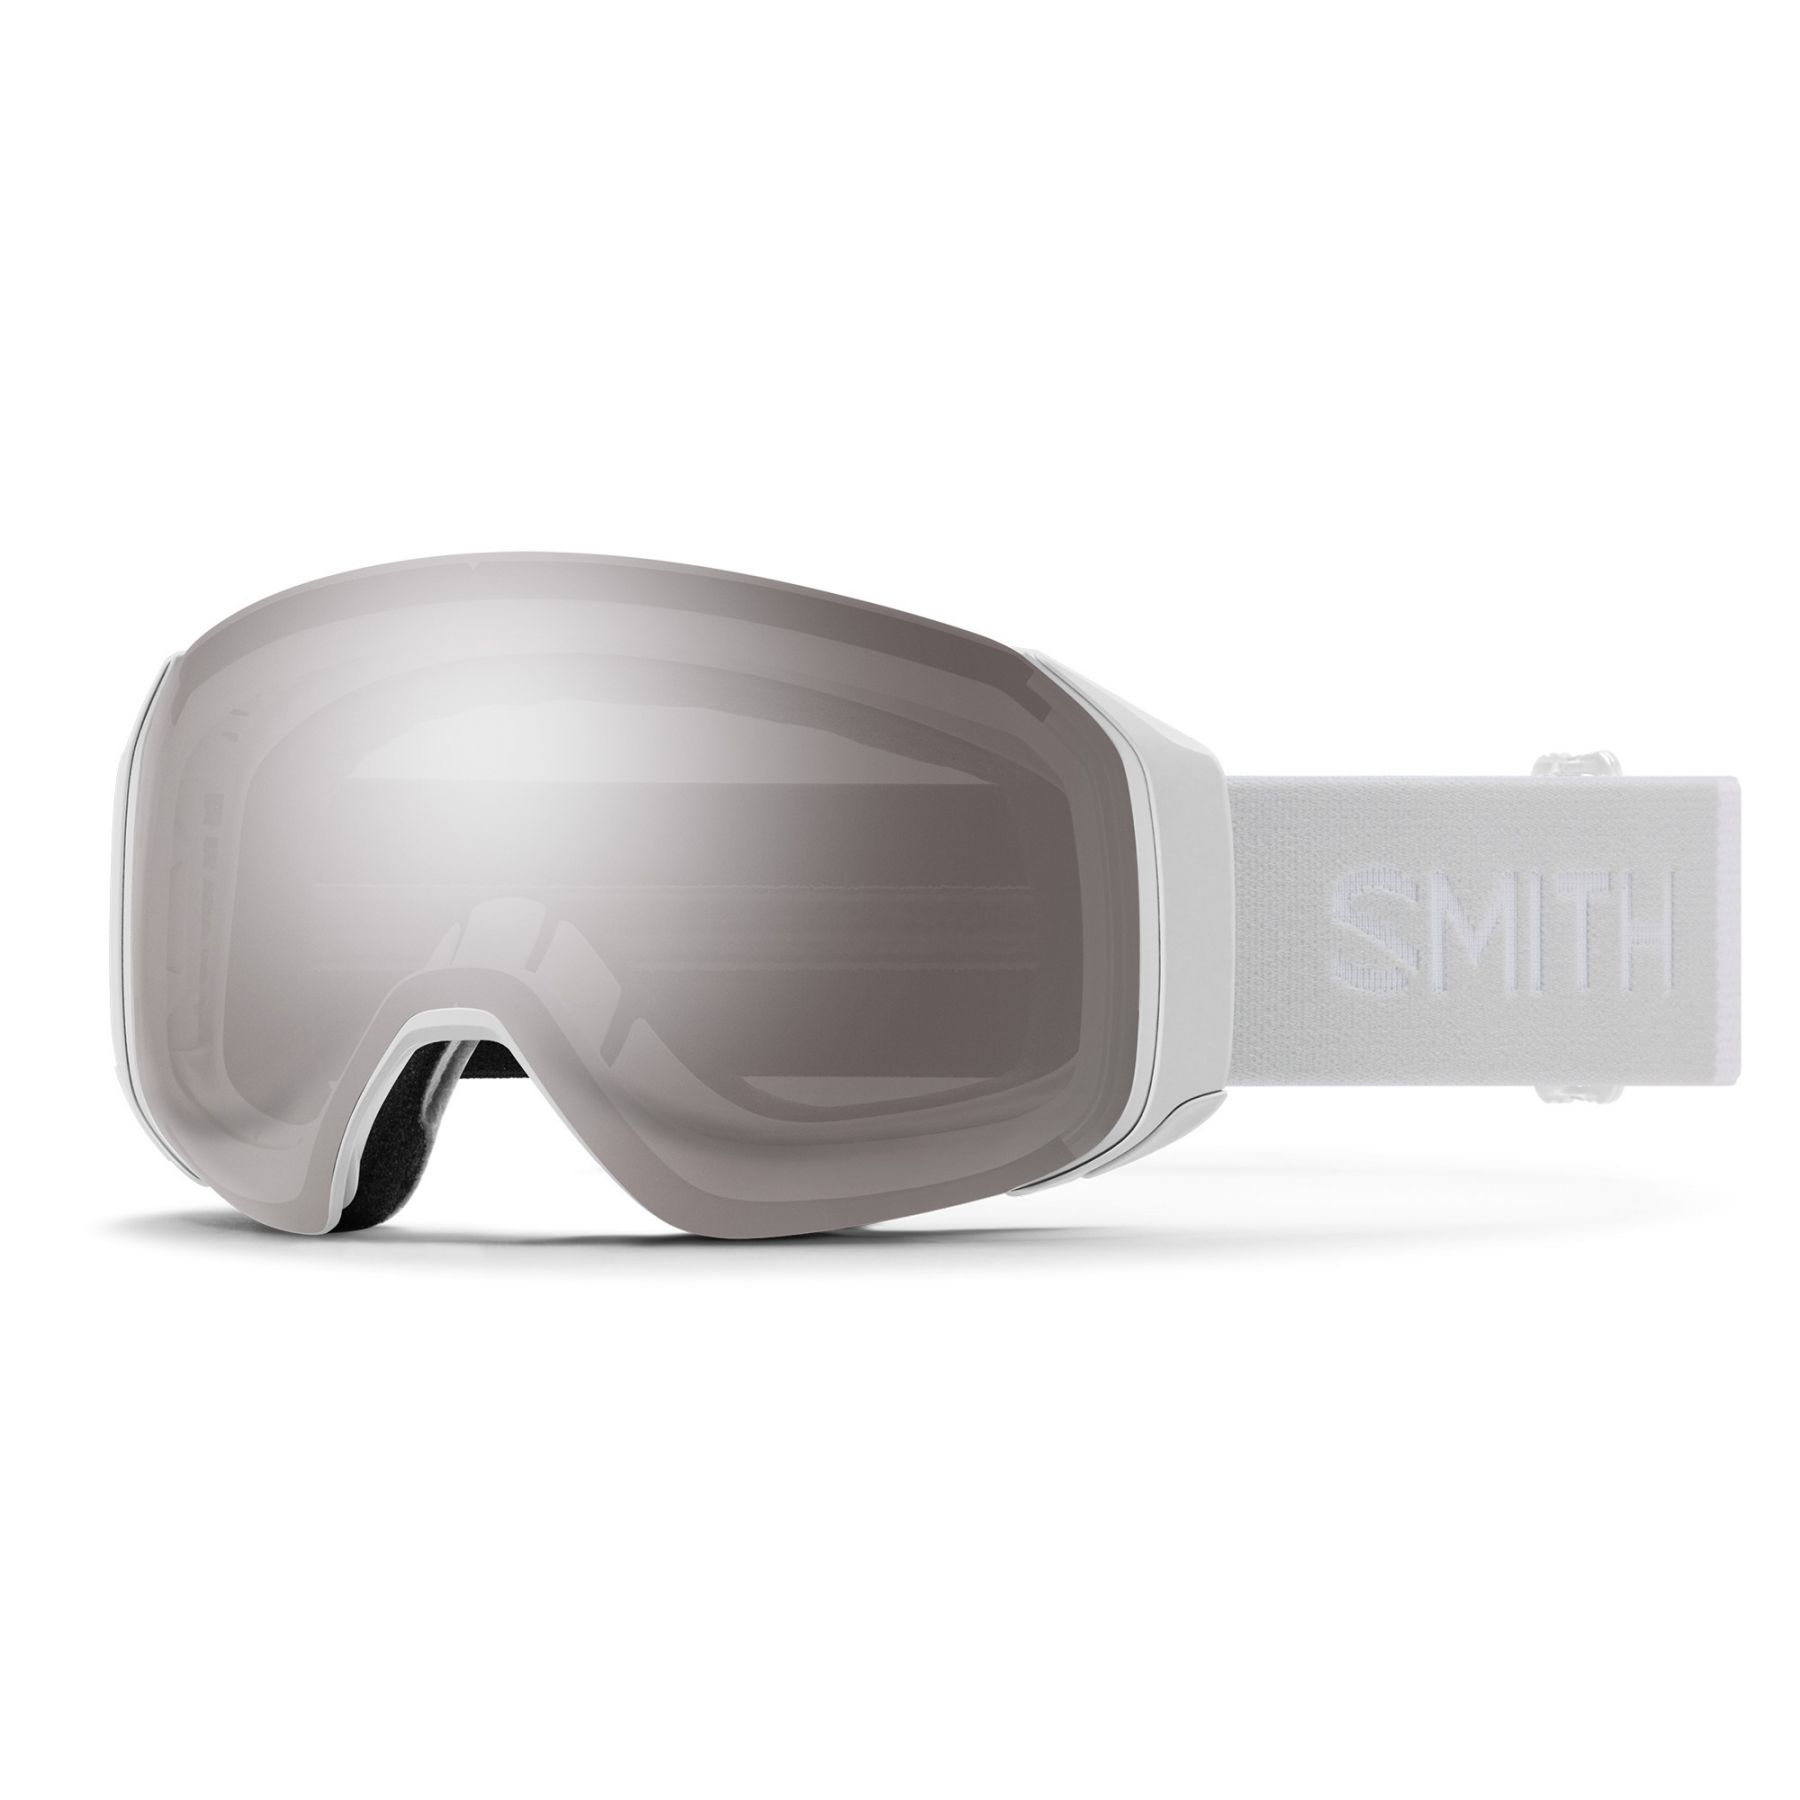 Billede af Smith 4D MAG S, skibrille, hvid hos AktivVinter.dk